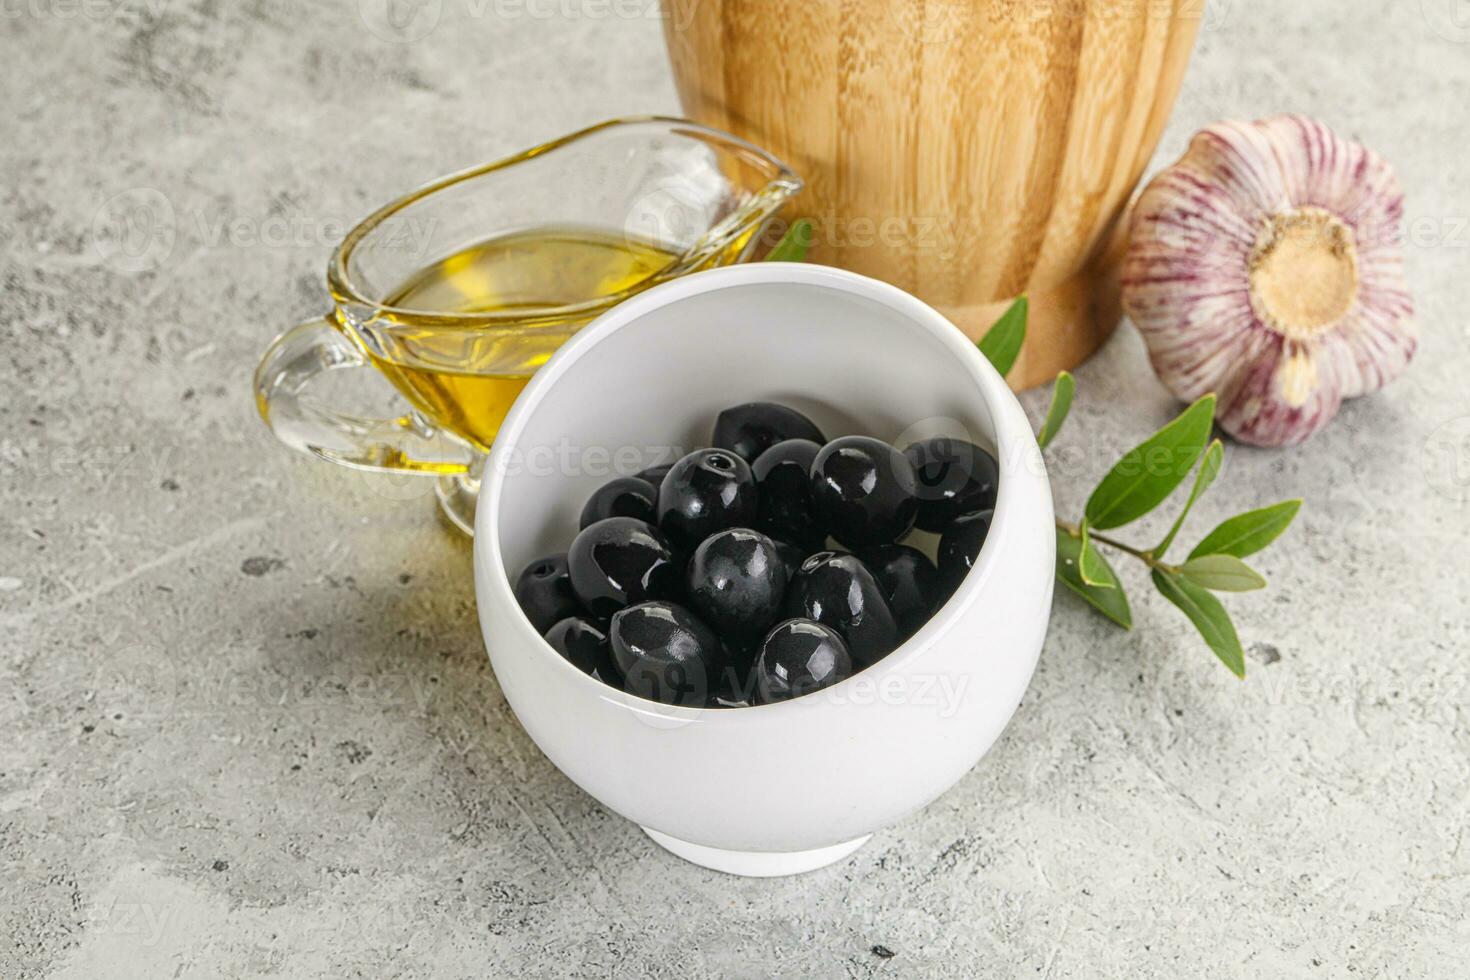 schwarz Oliven mit Öl und Ast foto